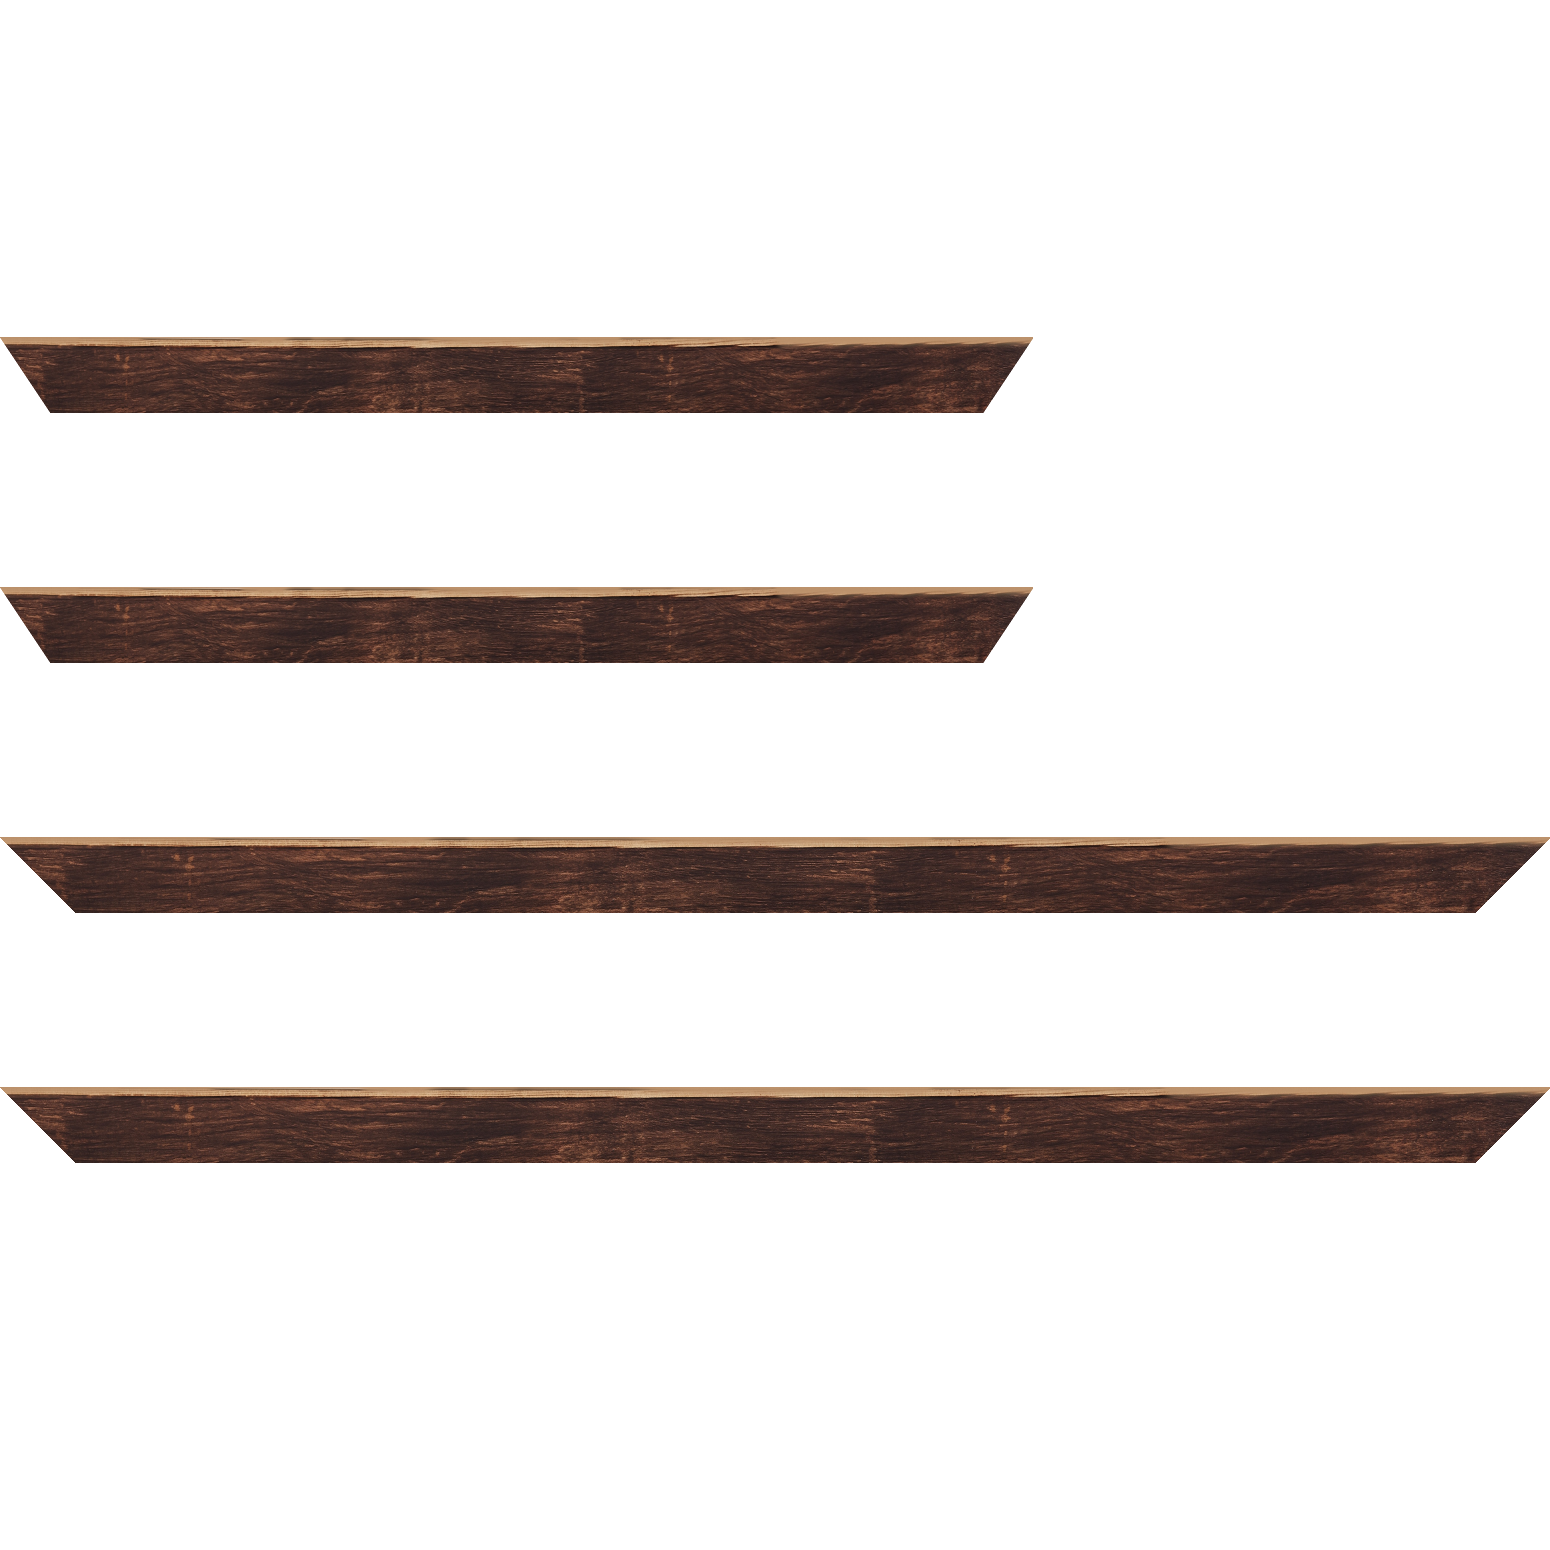 Baguette bois profil arrondi en pente plongeant largeur 2.4cm couleur marron effet ressuyé, angle du cadre extérieur filet naturel - 40x60